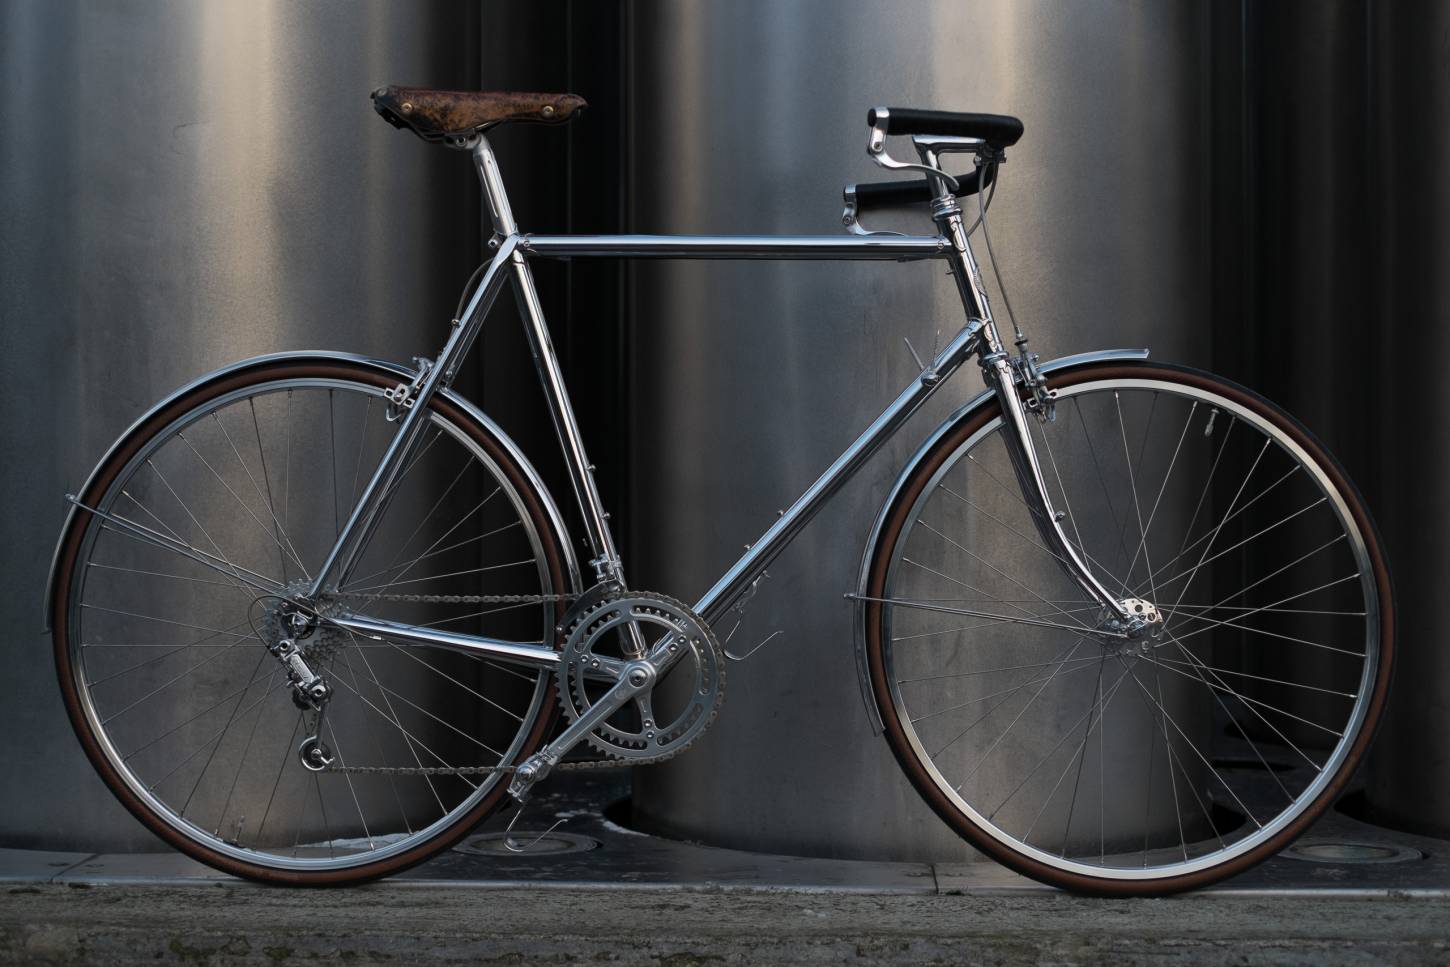 Studio Brisant "No 3" Randonneur bicicleta de carreras en cromo completo